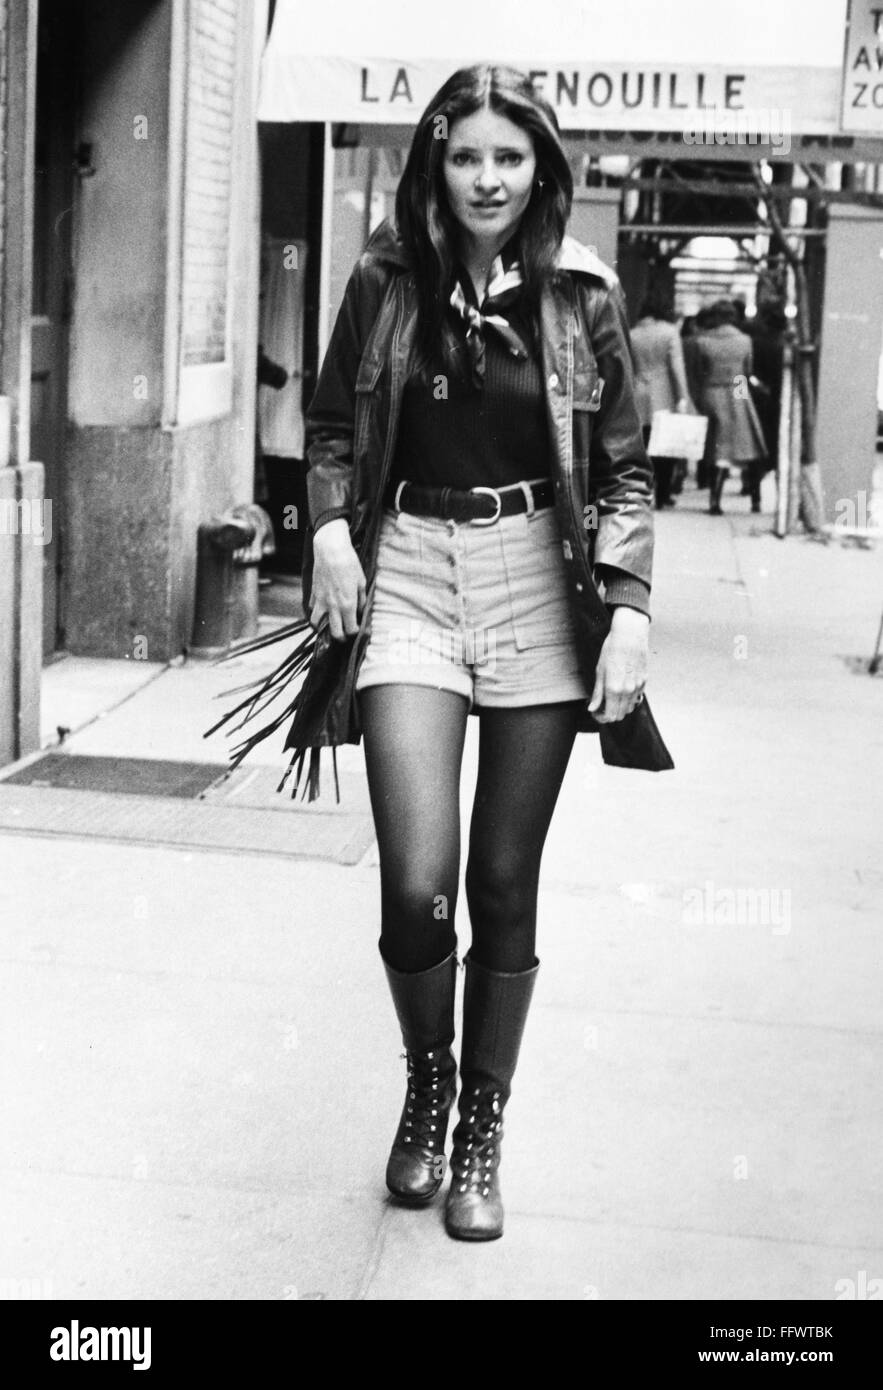 DAMENMODE, 1970ER JAHRE. NUM Trägerin heiß Hose, eine mit Fransen Lederjacke und boots vor La Grenouille Restaurant an der 52nd Street in Manhattan, New York City. Fotografie, Anfang der 1970er Jahre. Stockfoto